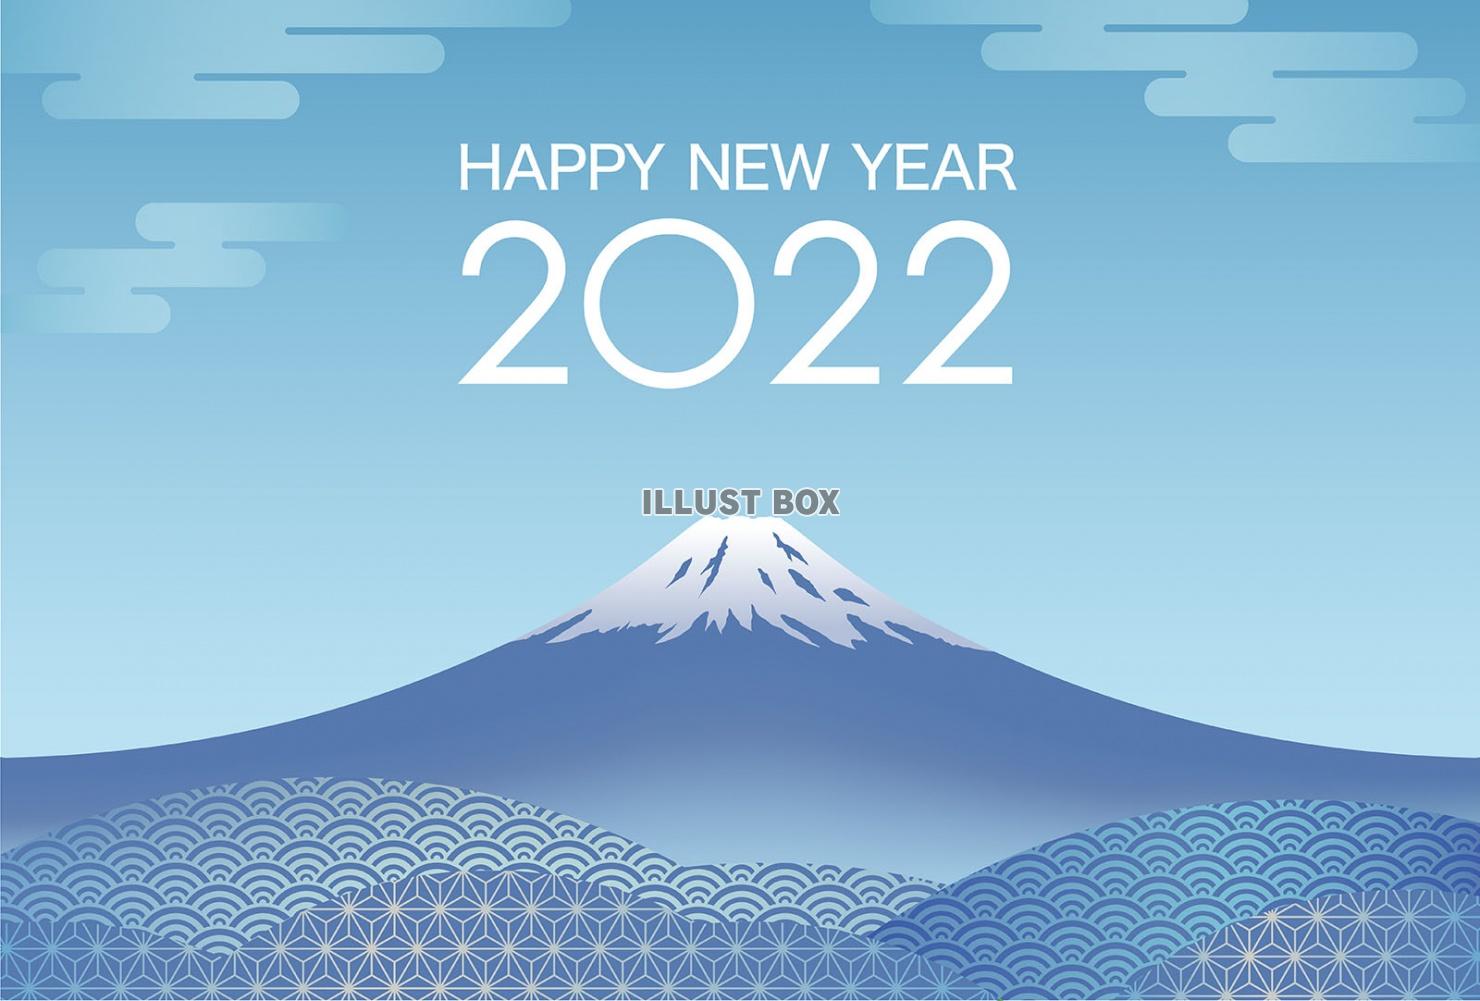 無料イラスト 22年 令和4年 富士山の年賀状テンプレート